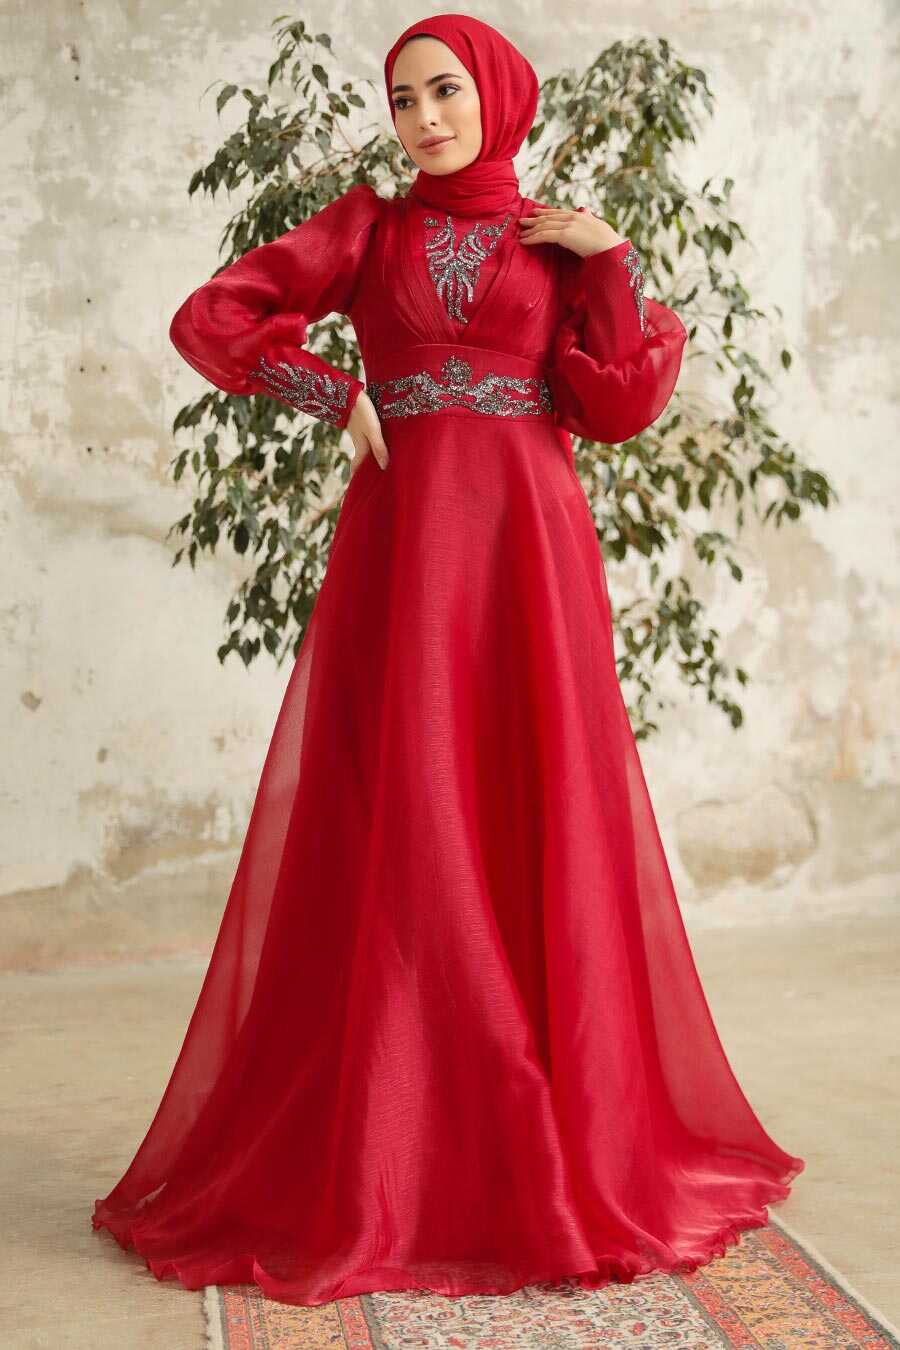 Neva Style - Stylish Claret Red Modest Islamic Clothing Prom Dress 3753BR